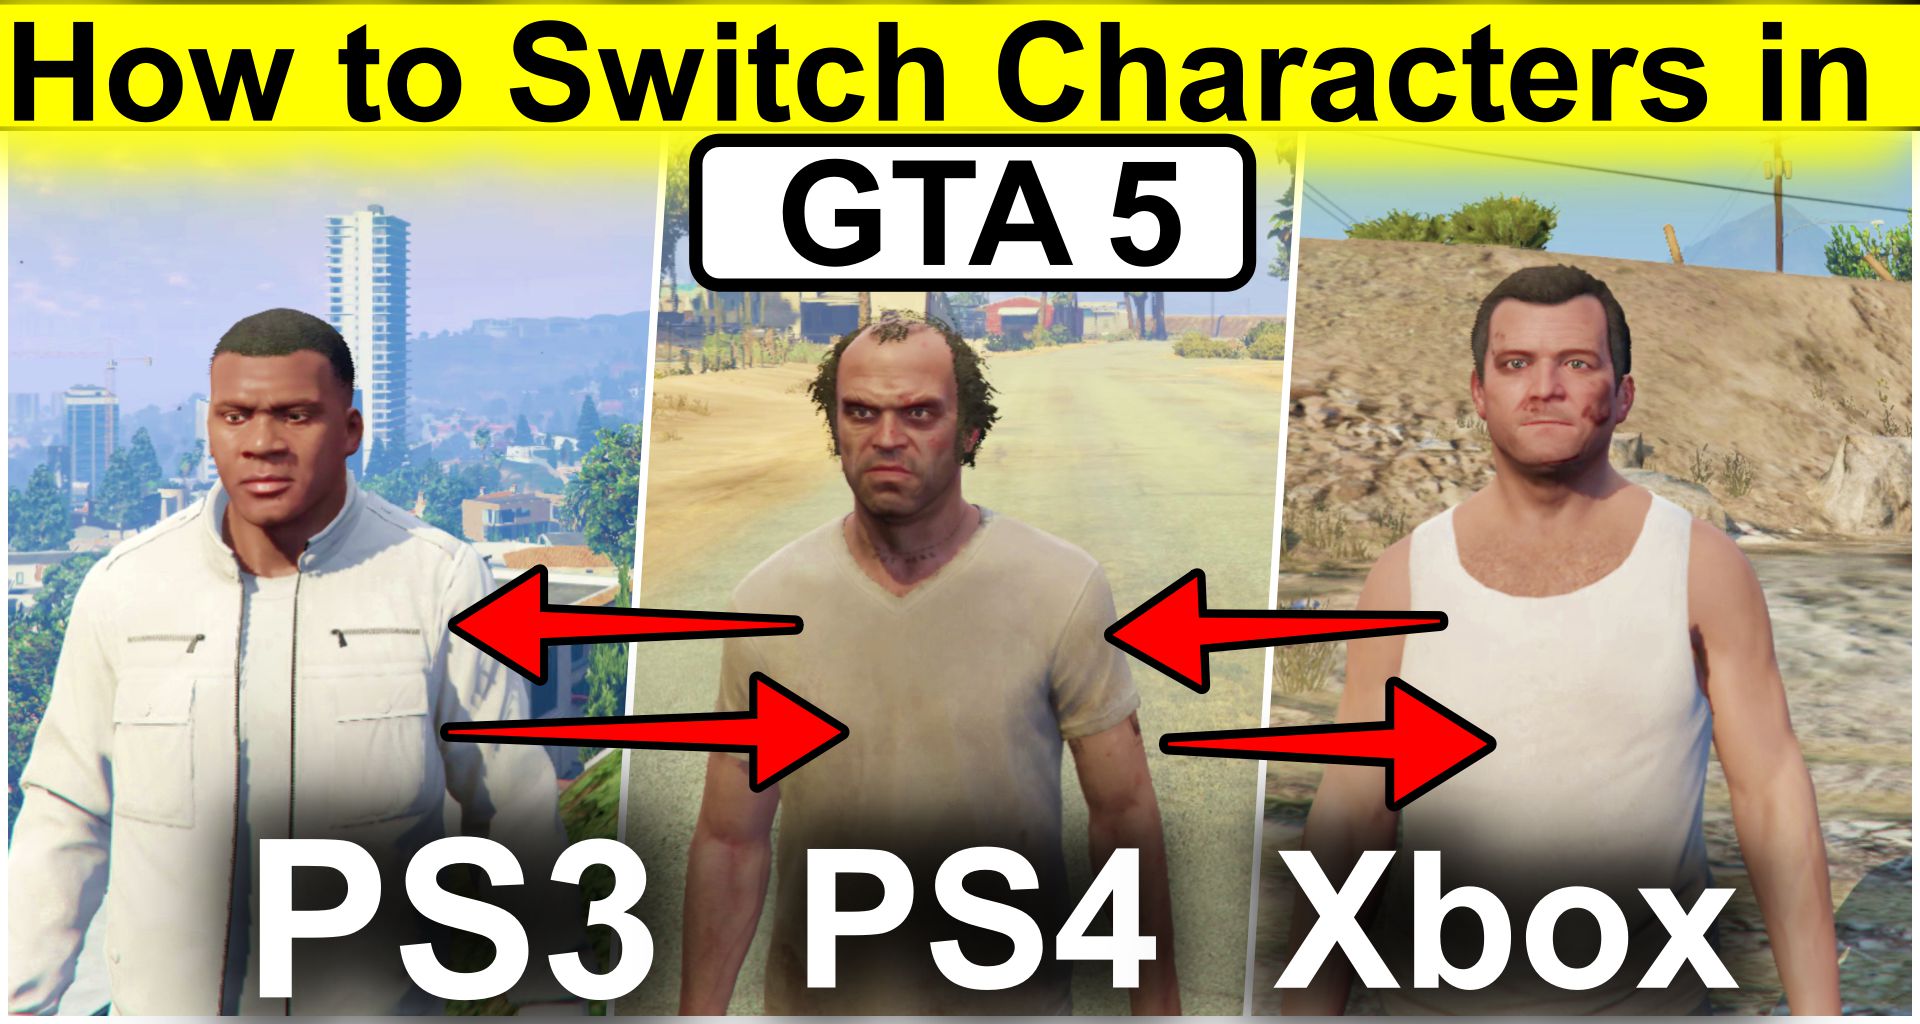 Sturen adelaar Gentleman vriendelijk How to Switch Characters in GTA 5 PS3, PS4, Xbox